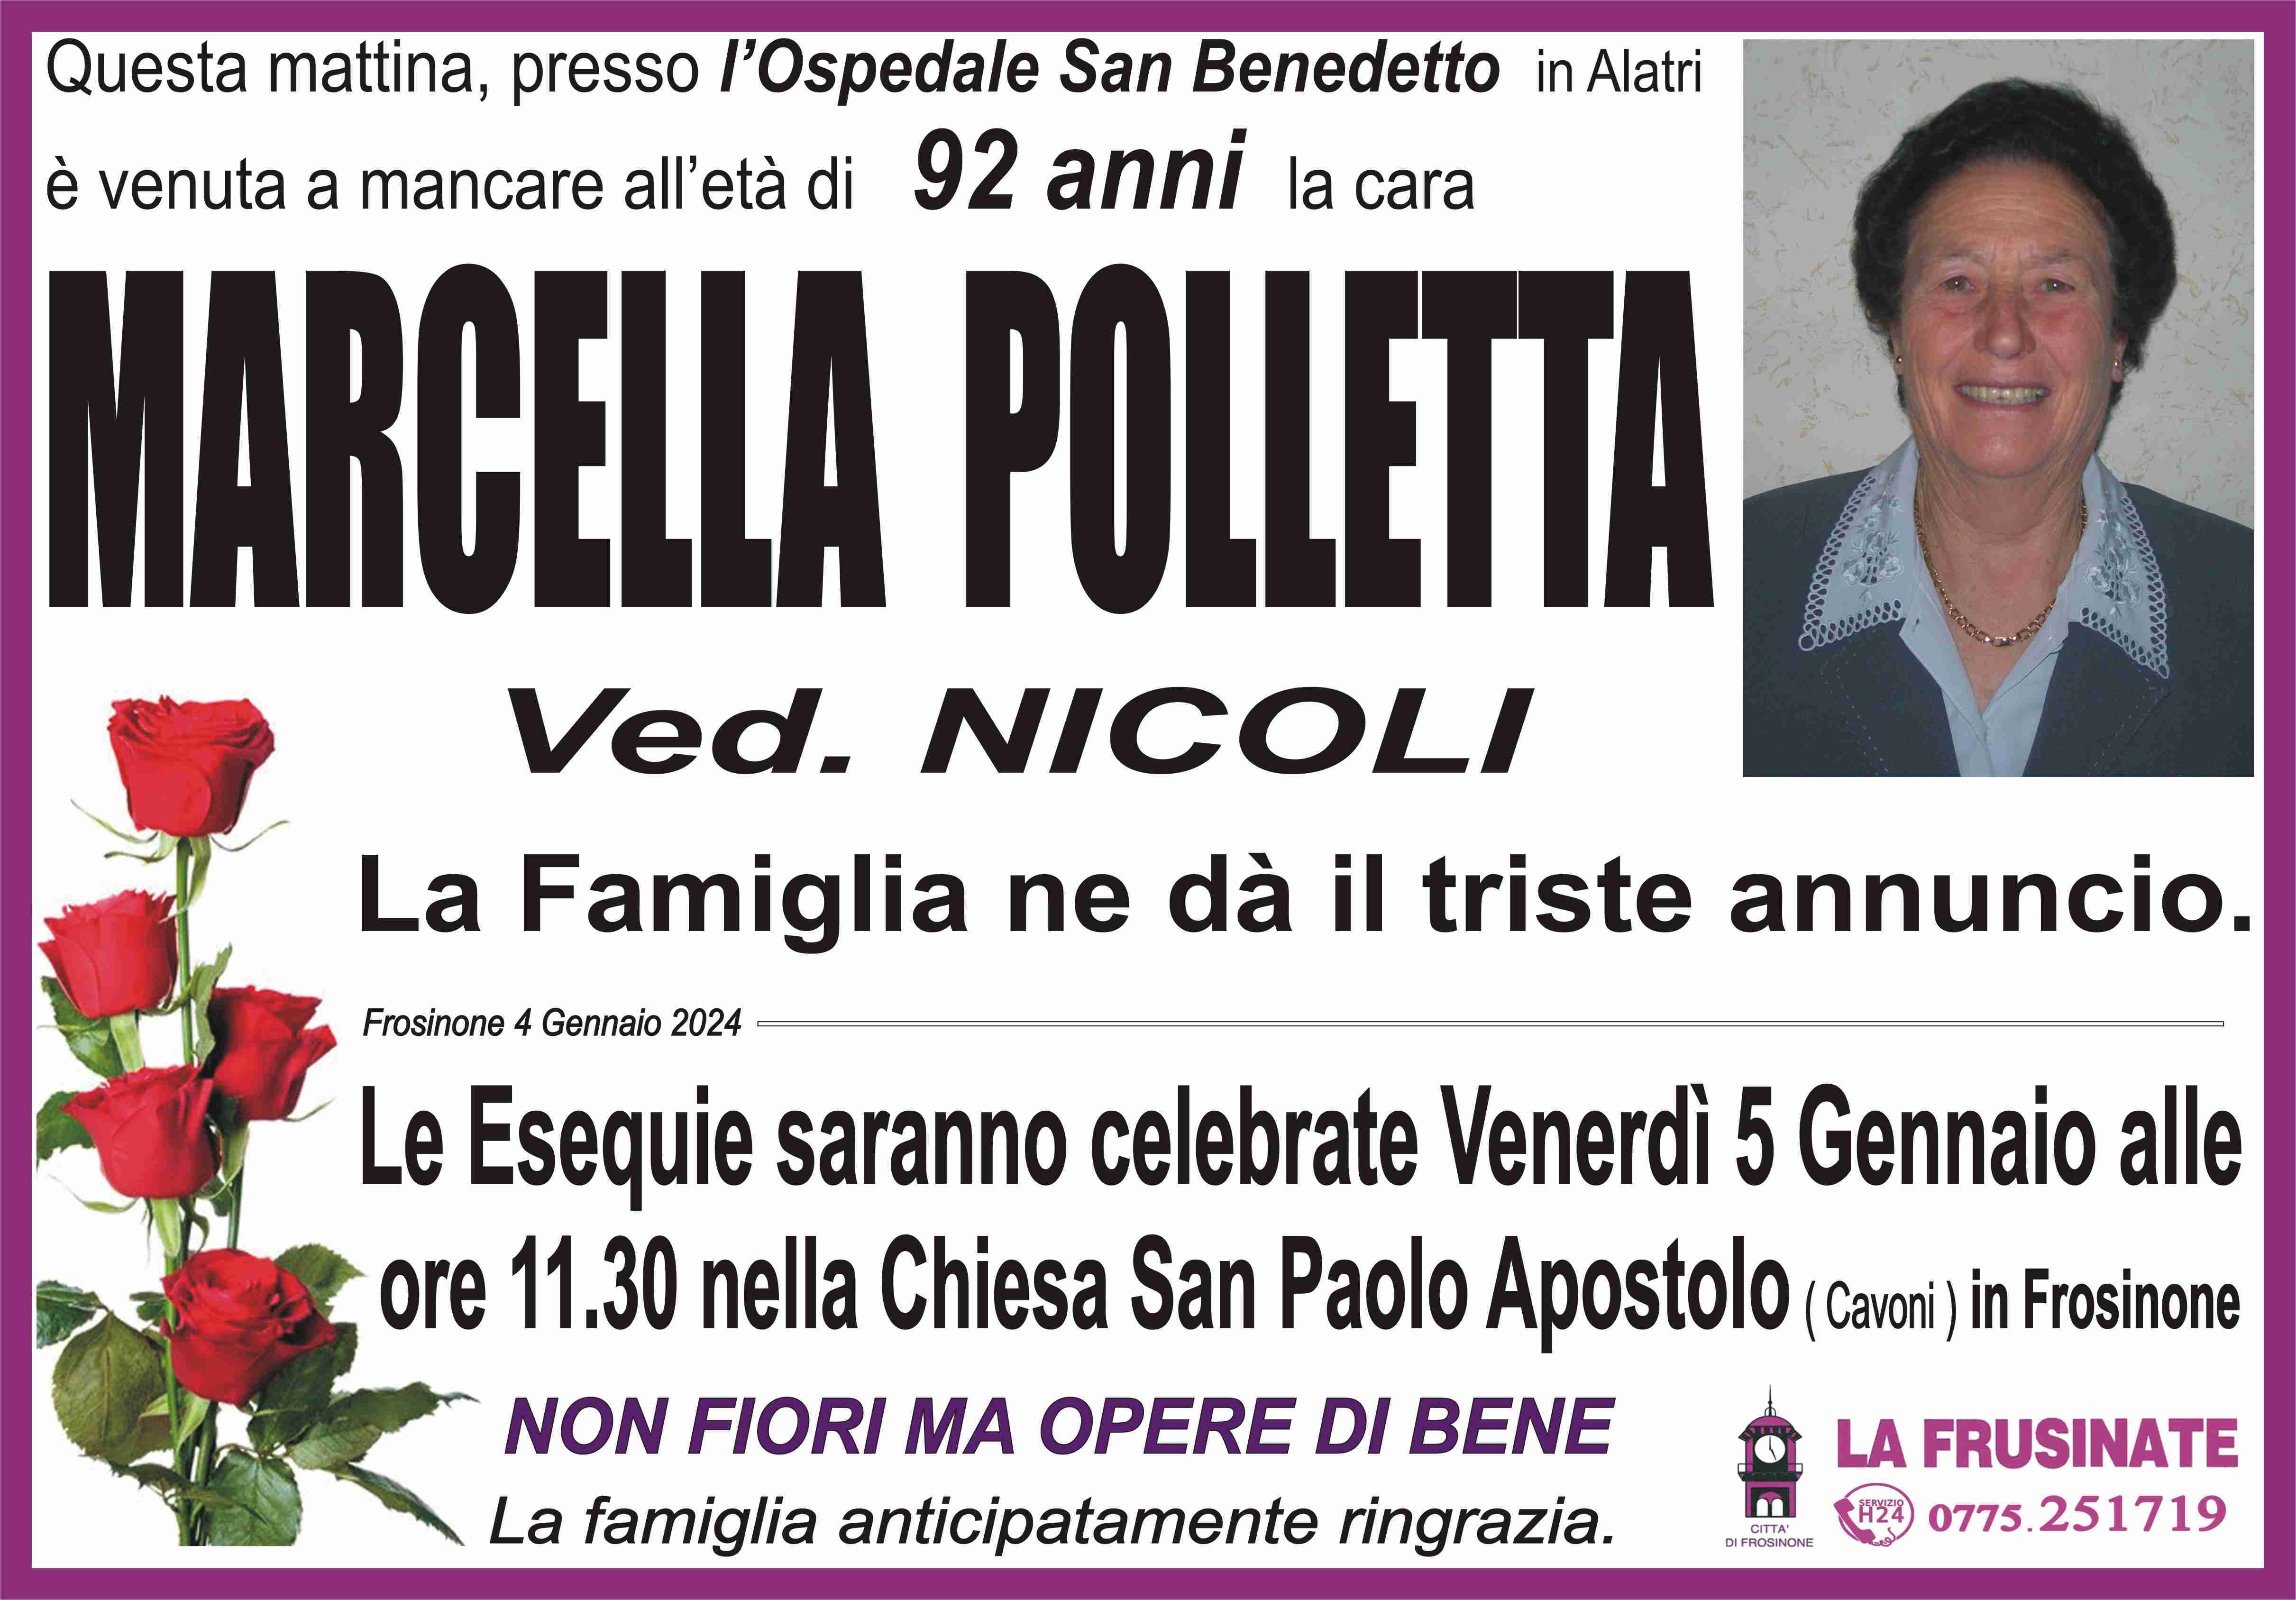 Marcella Polletta